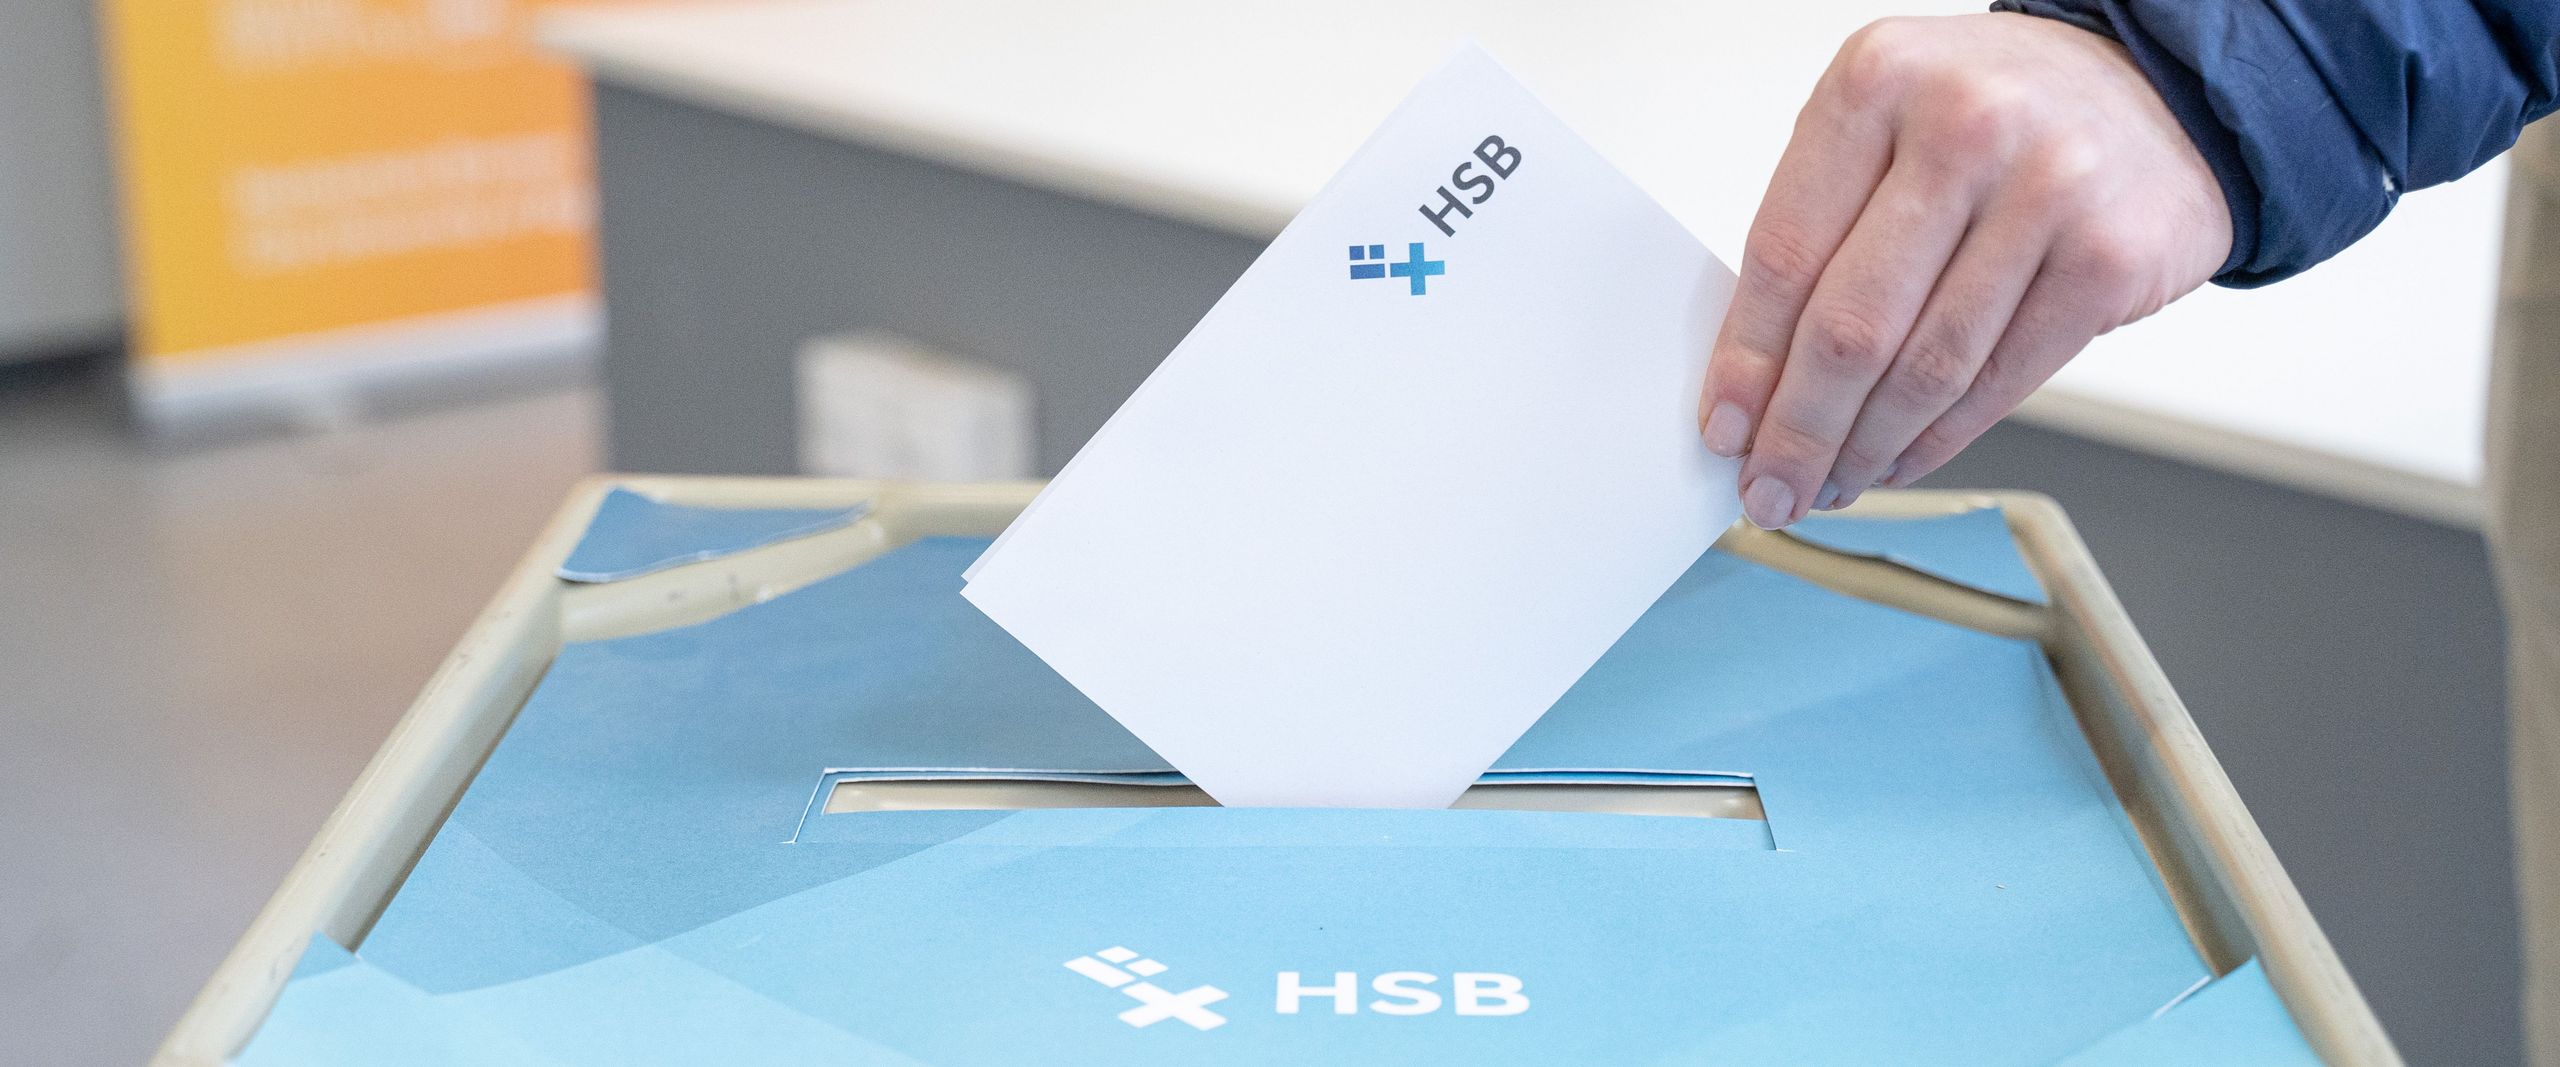 Auf dem Foto ist der Deckel einer Wahlurne im HSB-Design zu erkennen und eine Hand, die einen gefalteten weißen Zettel in die Wahlurne stecken will. 